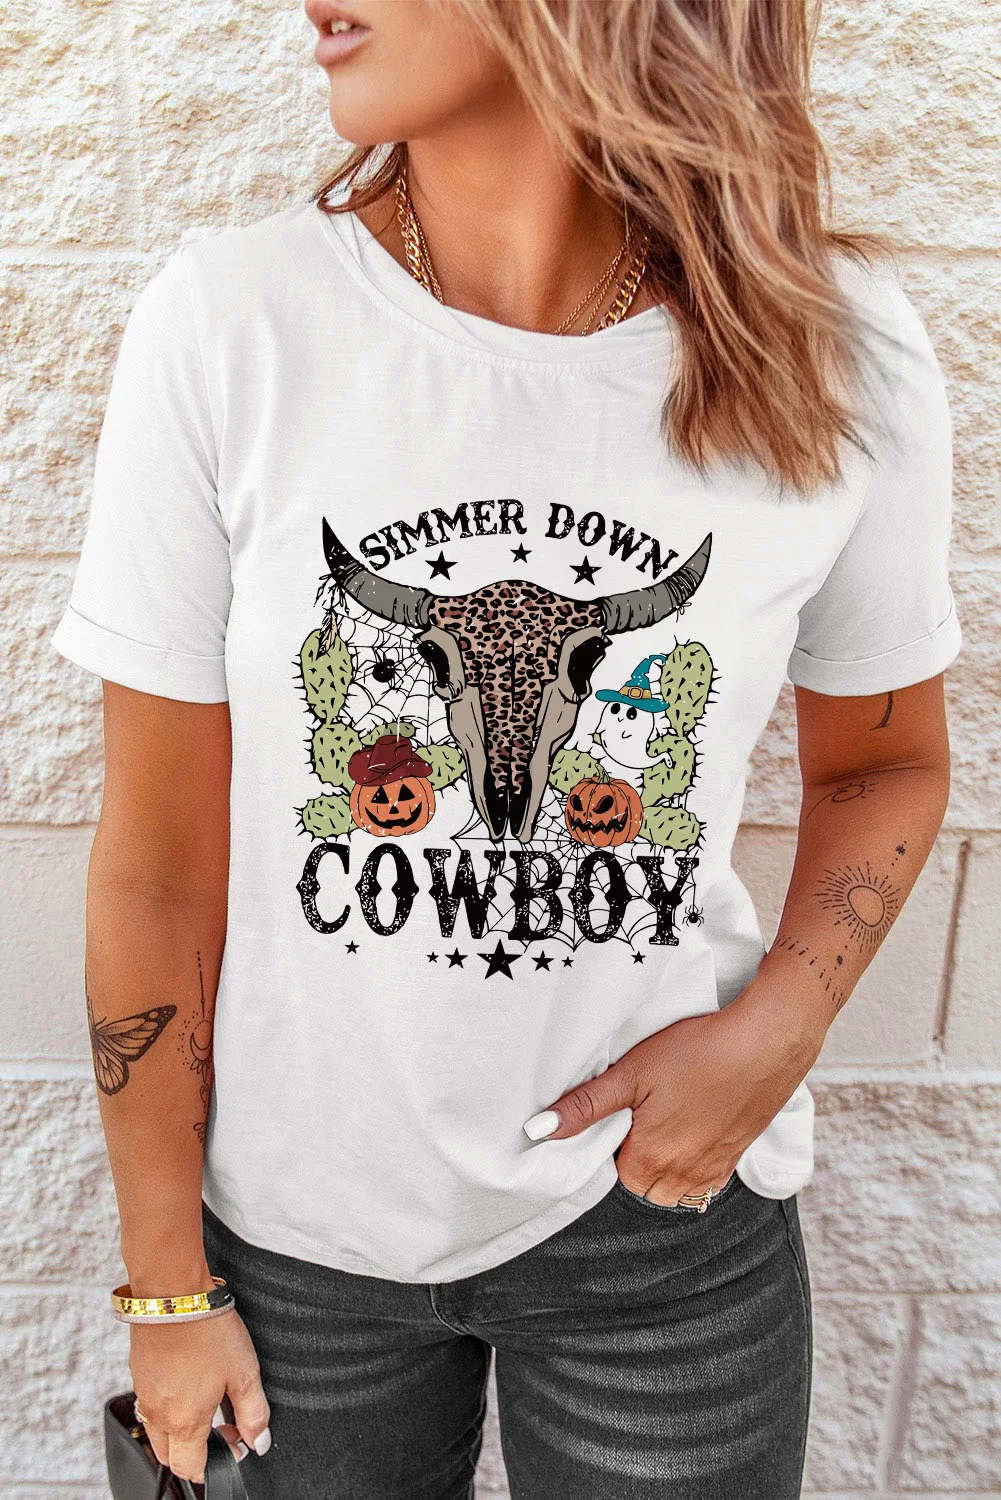 Dear-Lover Graphic Women's T-Shirts Vibe COWBOY Fashion Customized T-Shirt Women Playeras De Mujer